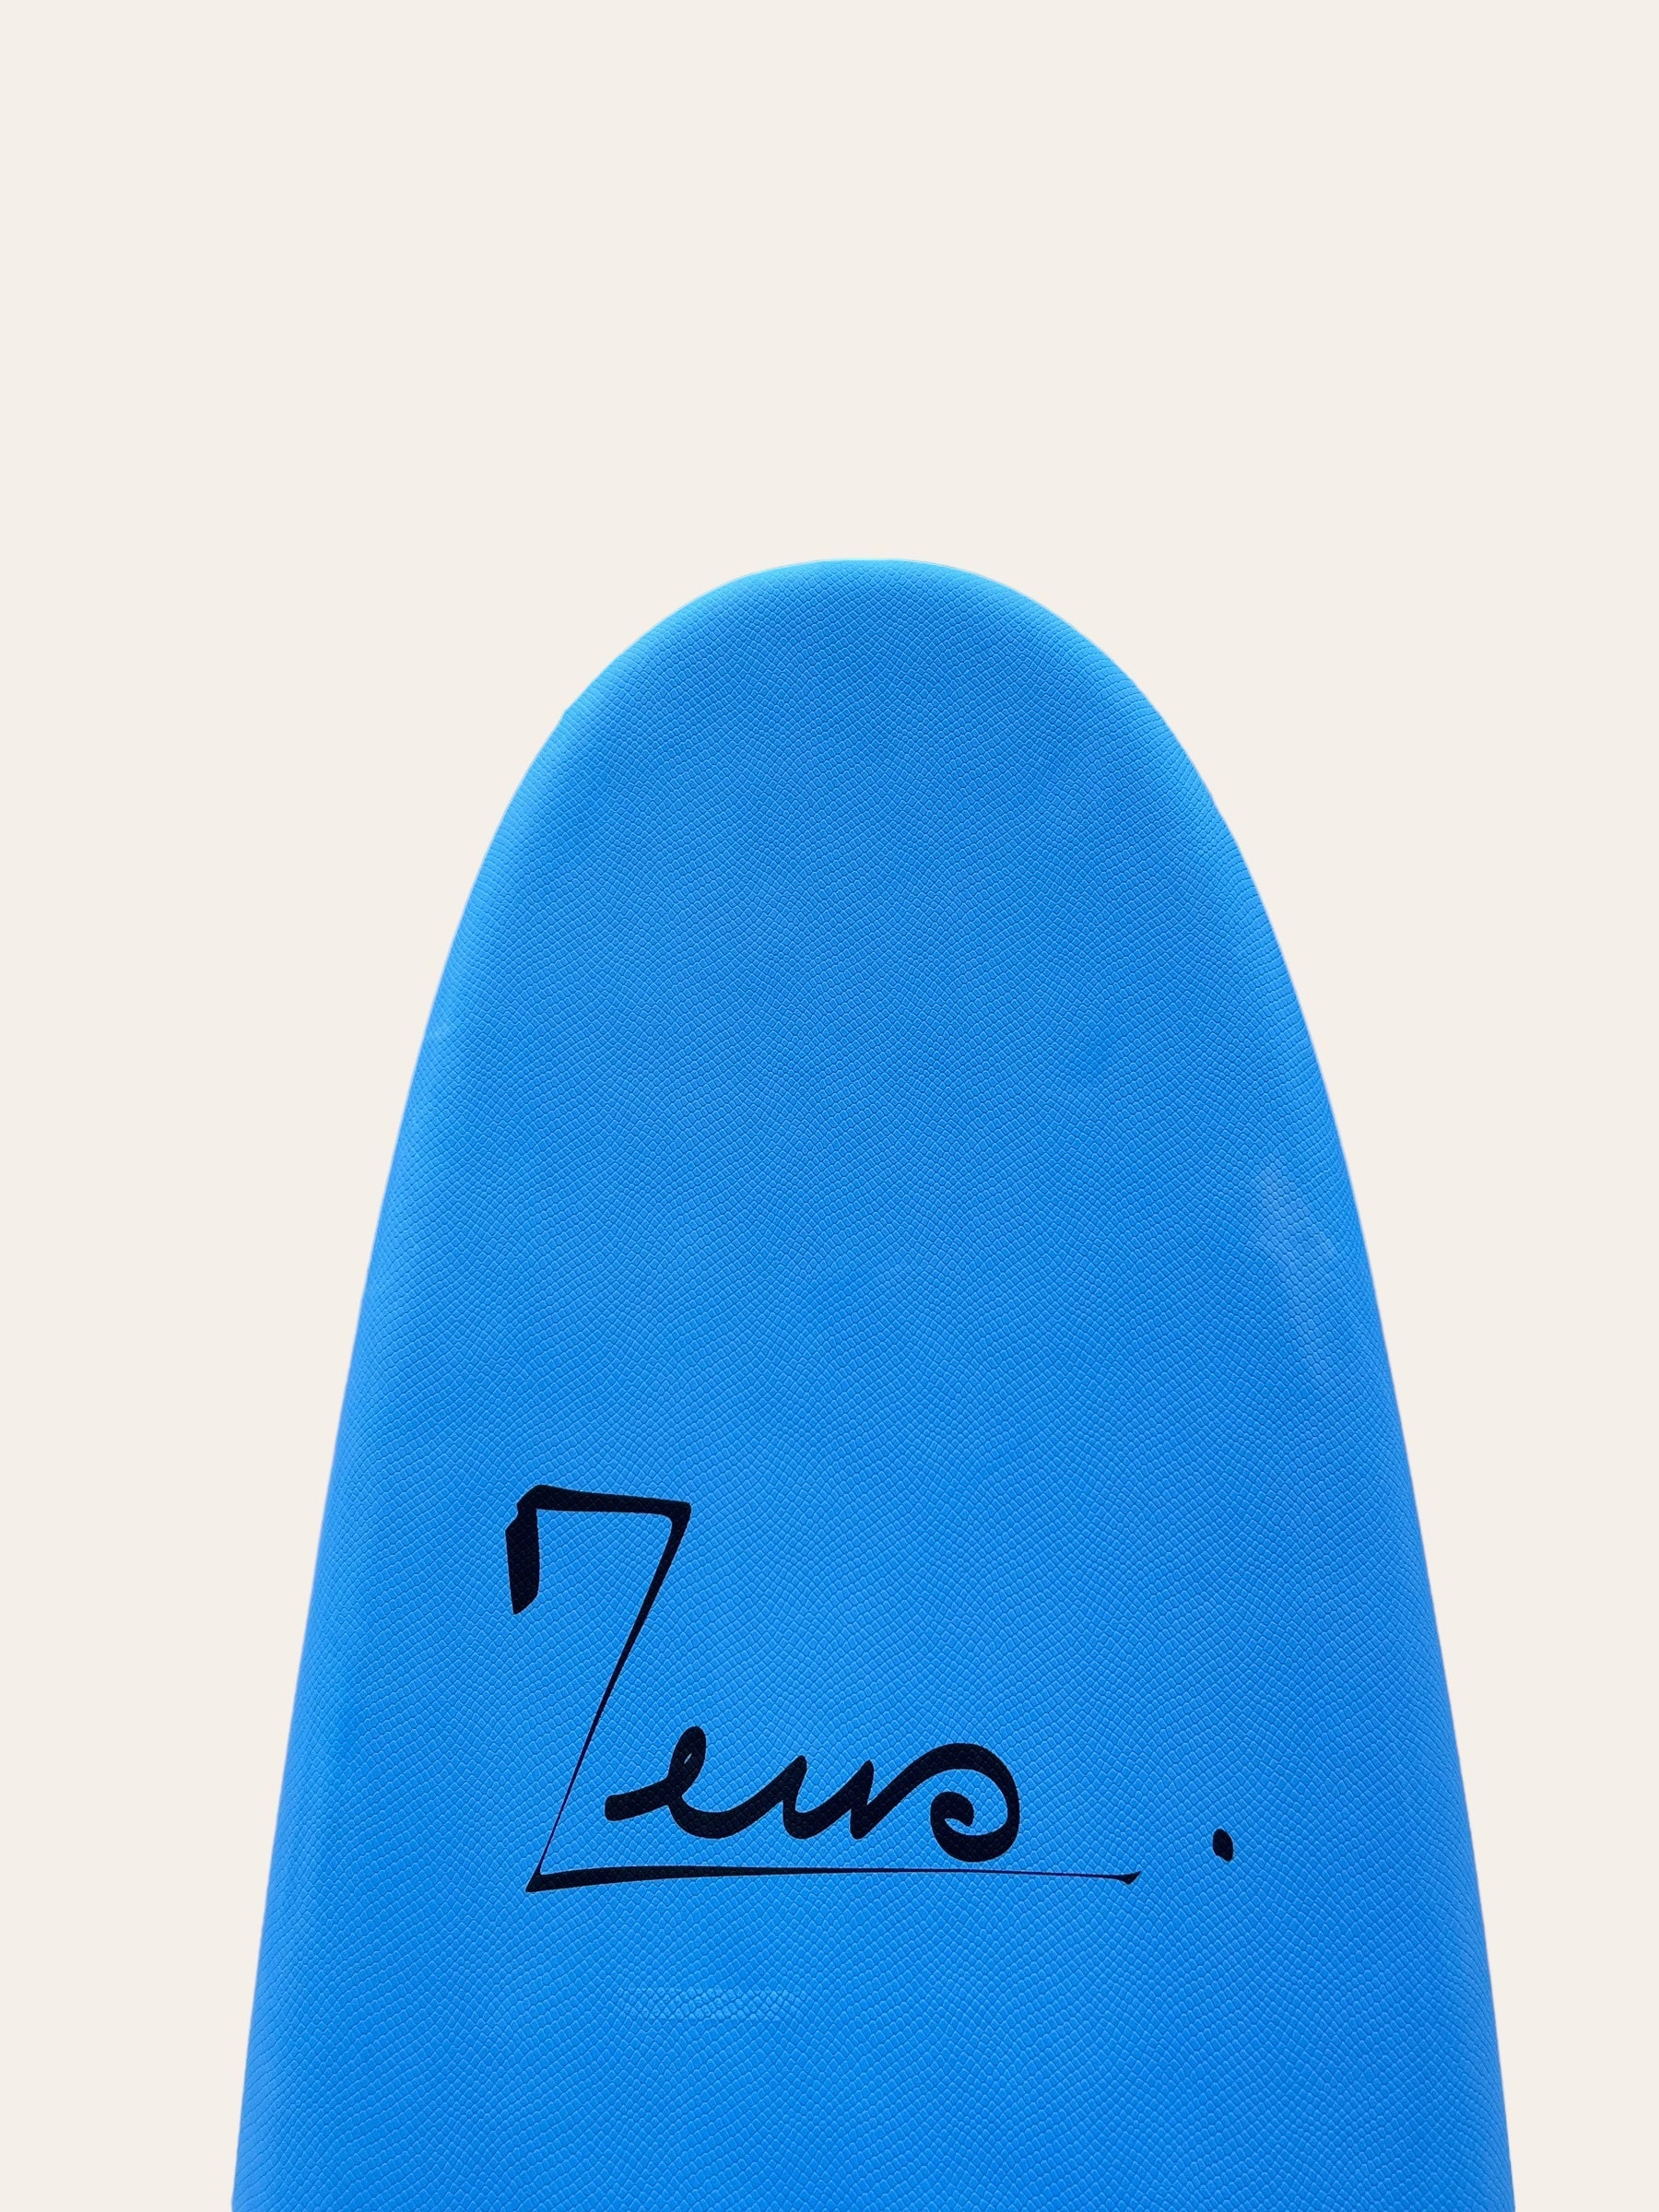 Zeus Temper 8'0product_type#surf_#surfshop#_zeus-surfboards_